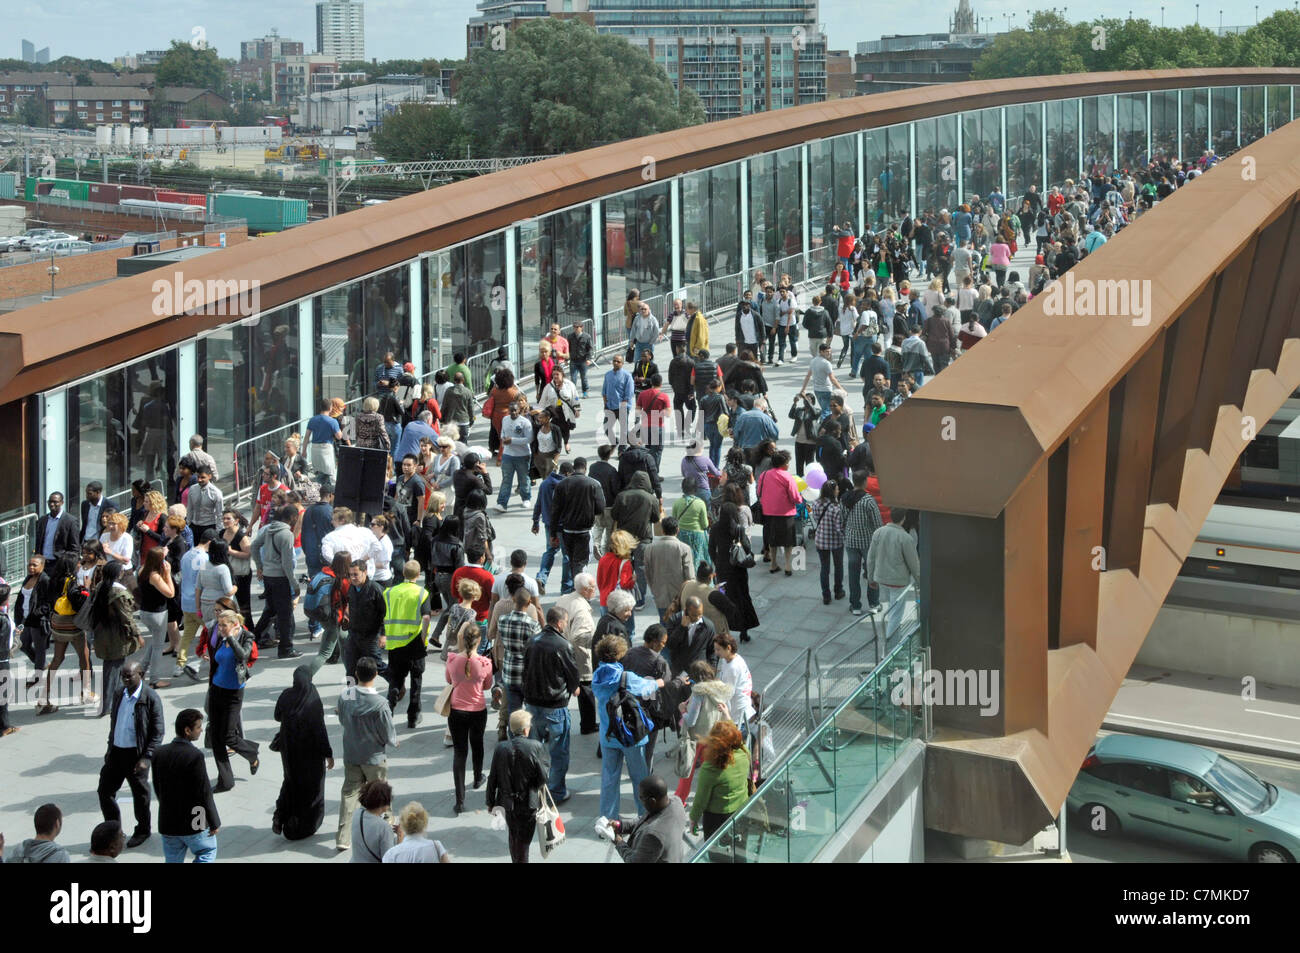 Des foules de gens qui font des courses sur la passerelle au-dessus du chemin de fer de De la gare de Stratford à Westfield Shopping Centre East London Newham Angleterre Royaume-Uni Banque D'Images